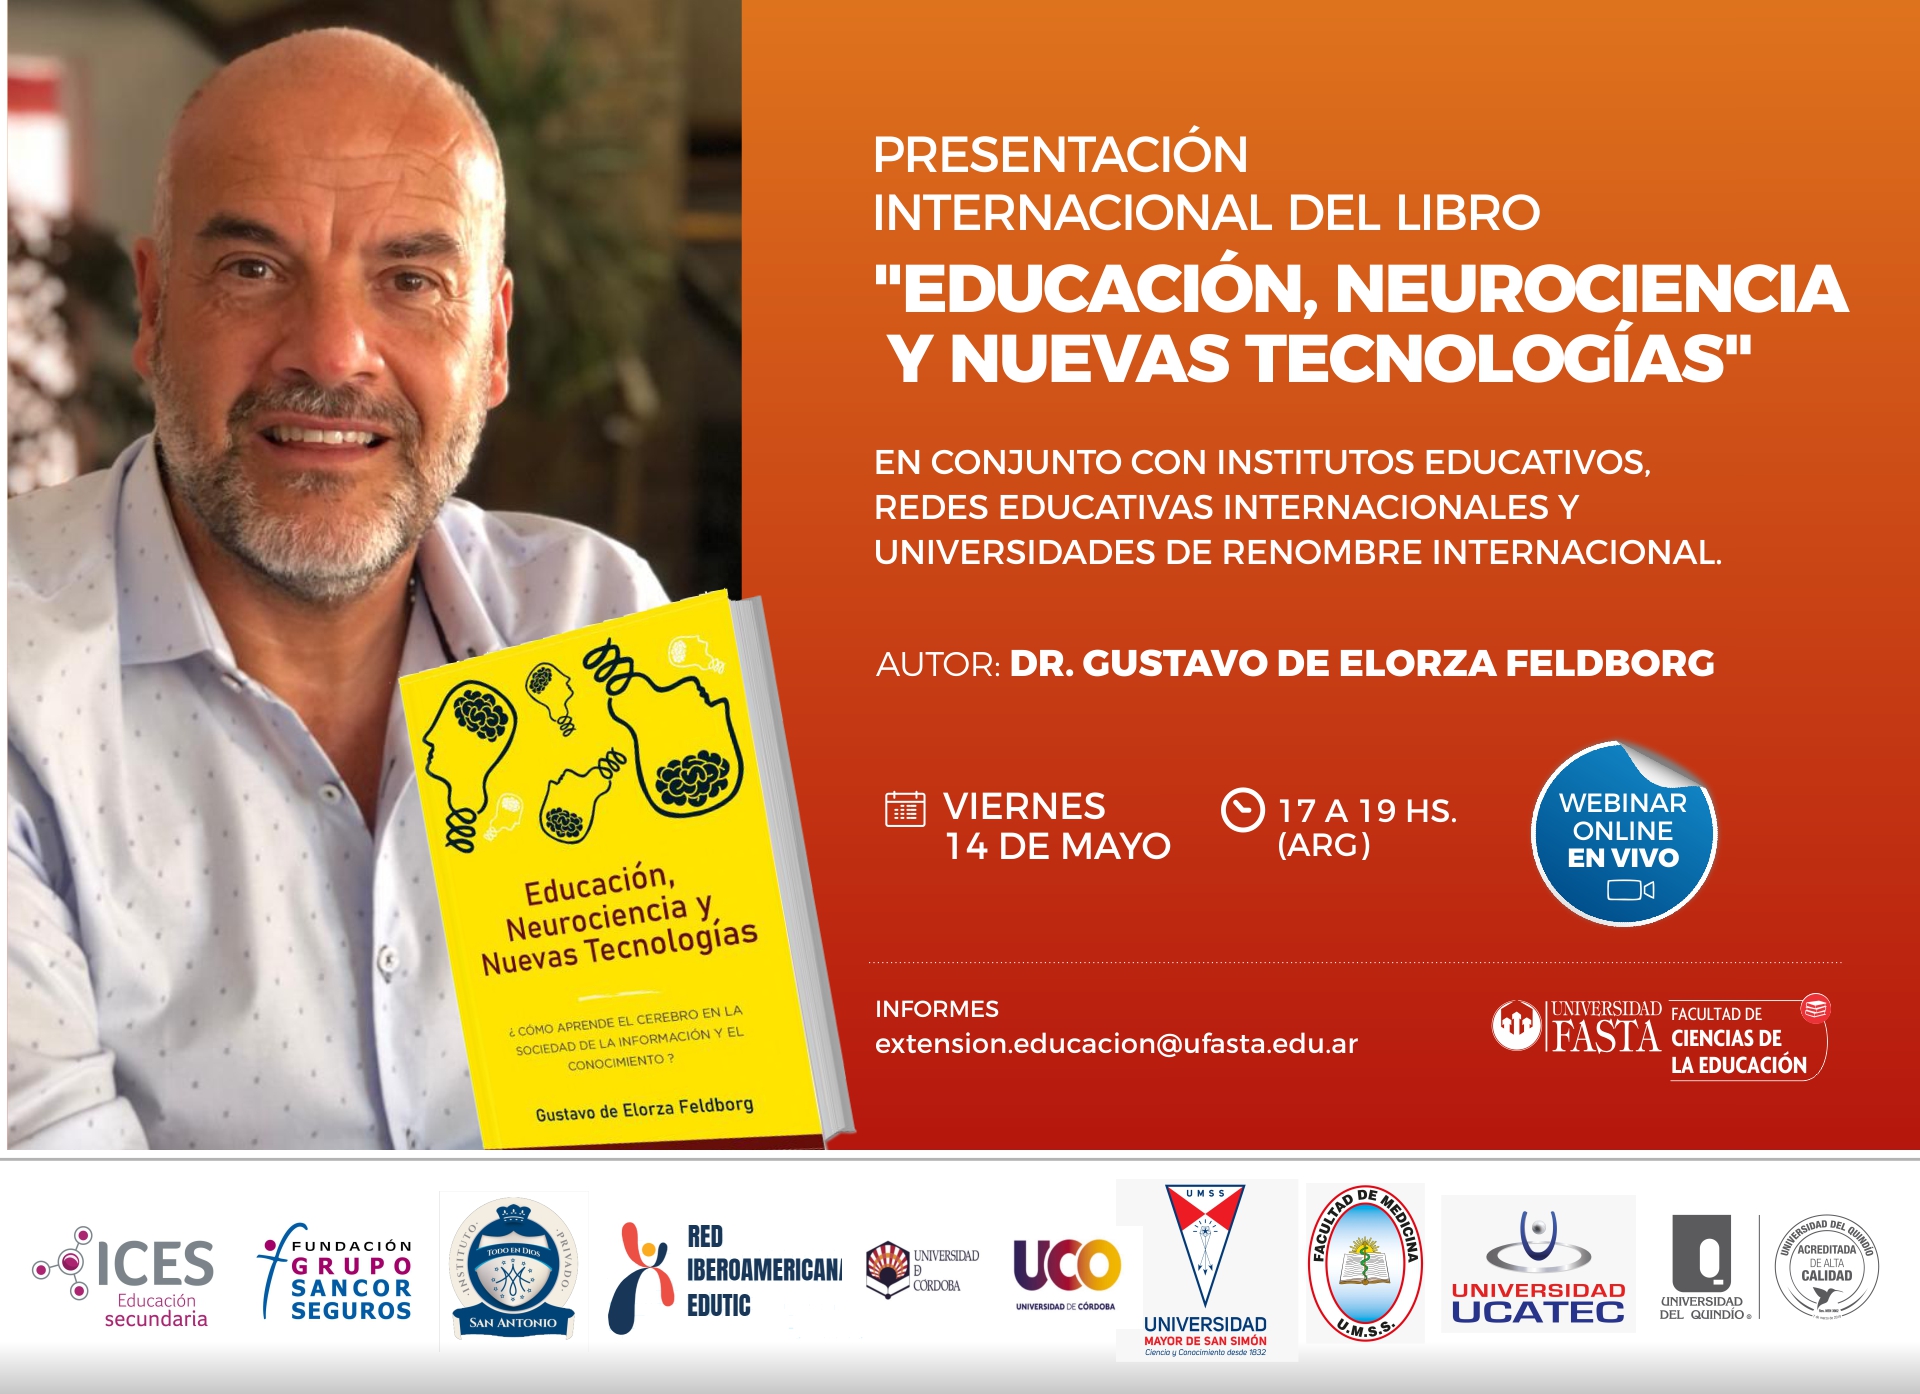 Presentación Internacional del Libro: "Educación, Neurociencia y Nuevas Tecnologías"